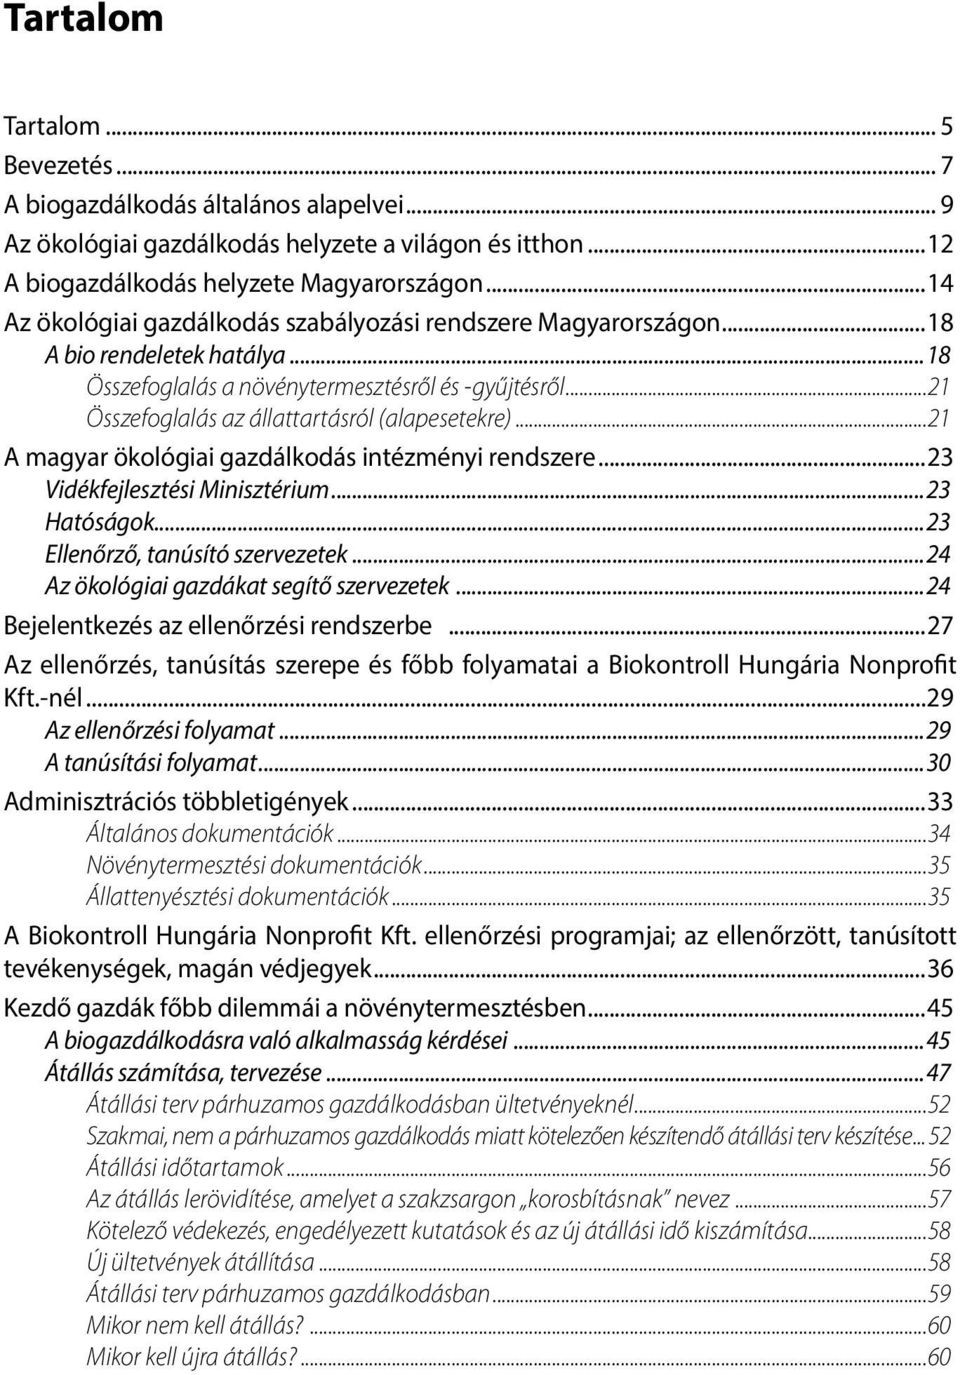 ..21 Összefoglalás az állattartásról (alapesetekre)...21 A magyar ökológiai gazdálkodás intézményi rendszere...23 Vidékfejlesztési Minisztérium...23 Hatóságok...23 Ellenőrző, tanúsító szervezetek.